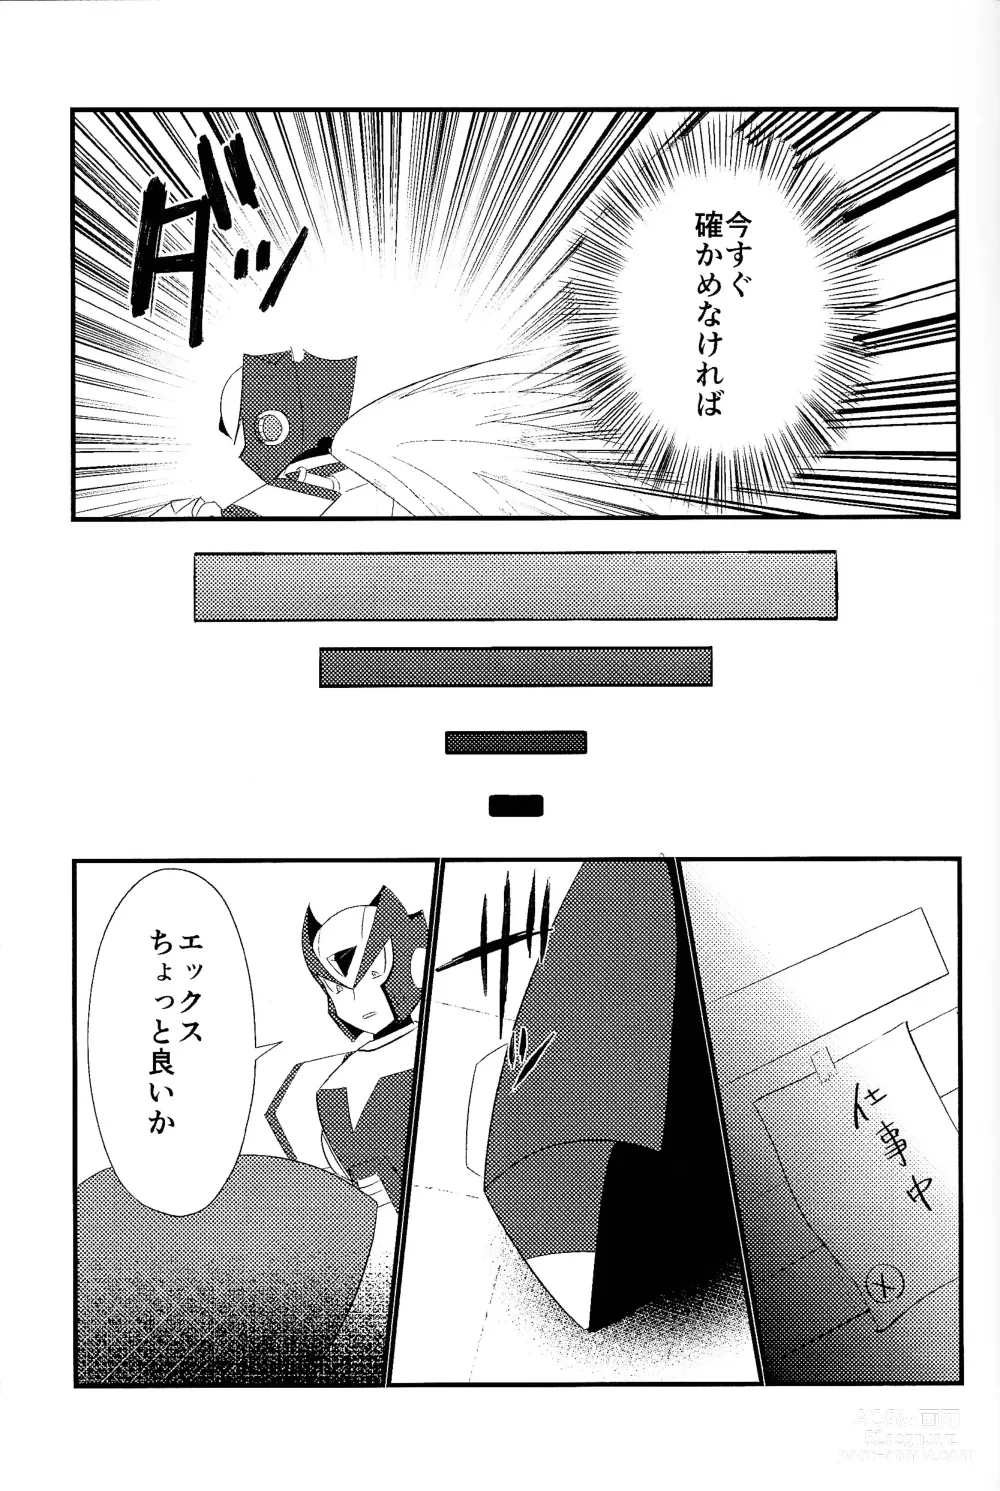 Page 7 of doujinshi Ore wa kimi no te de Hna koto o shite shimatta!!!